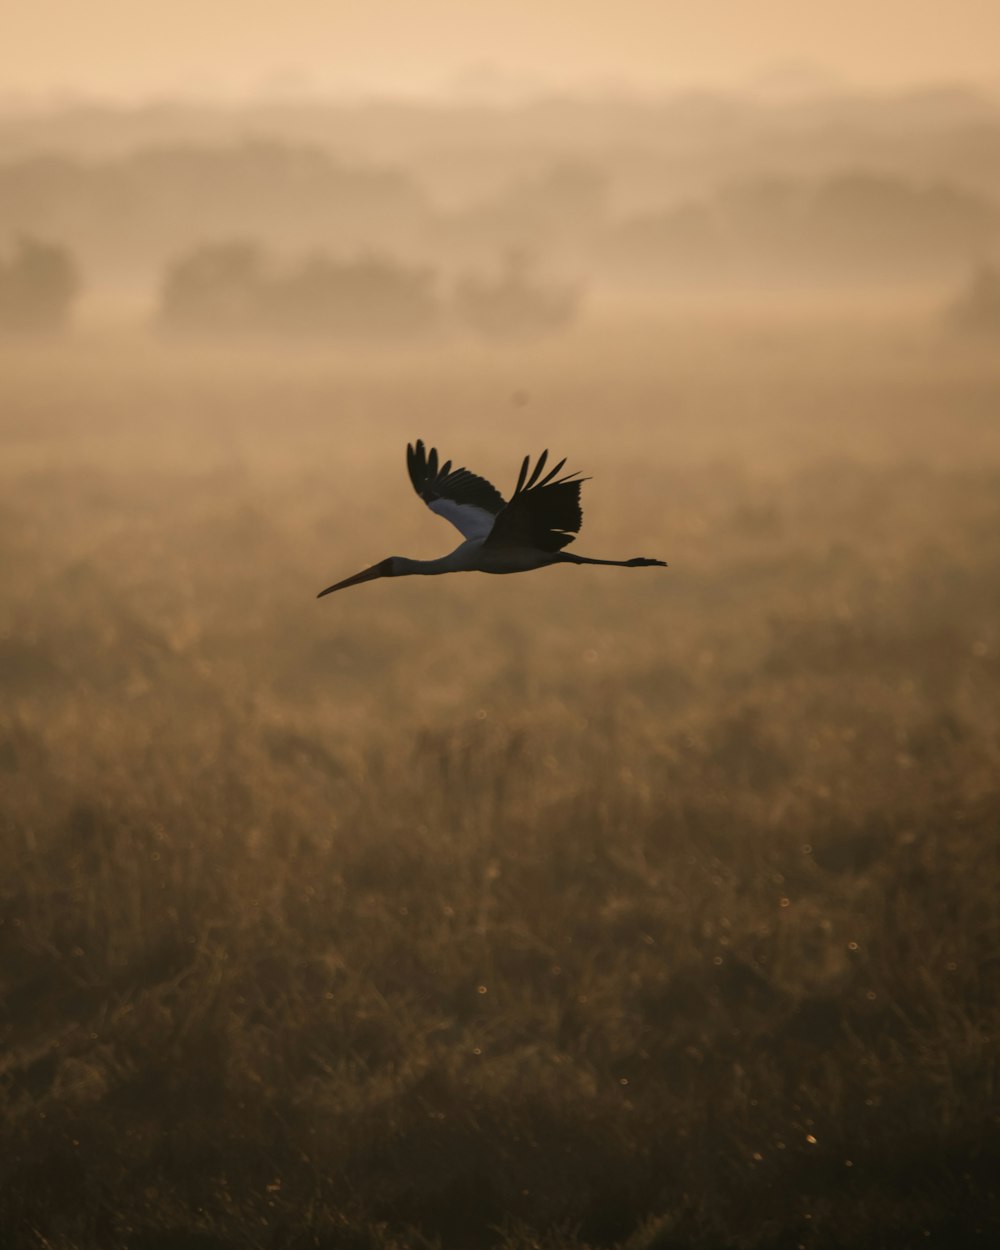 a large bird flying through a foggy field